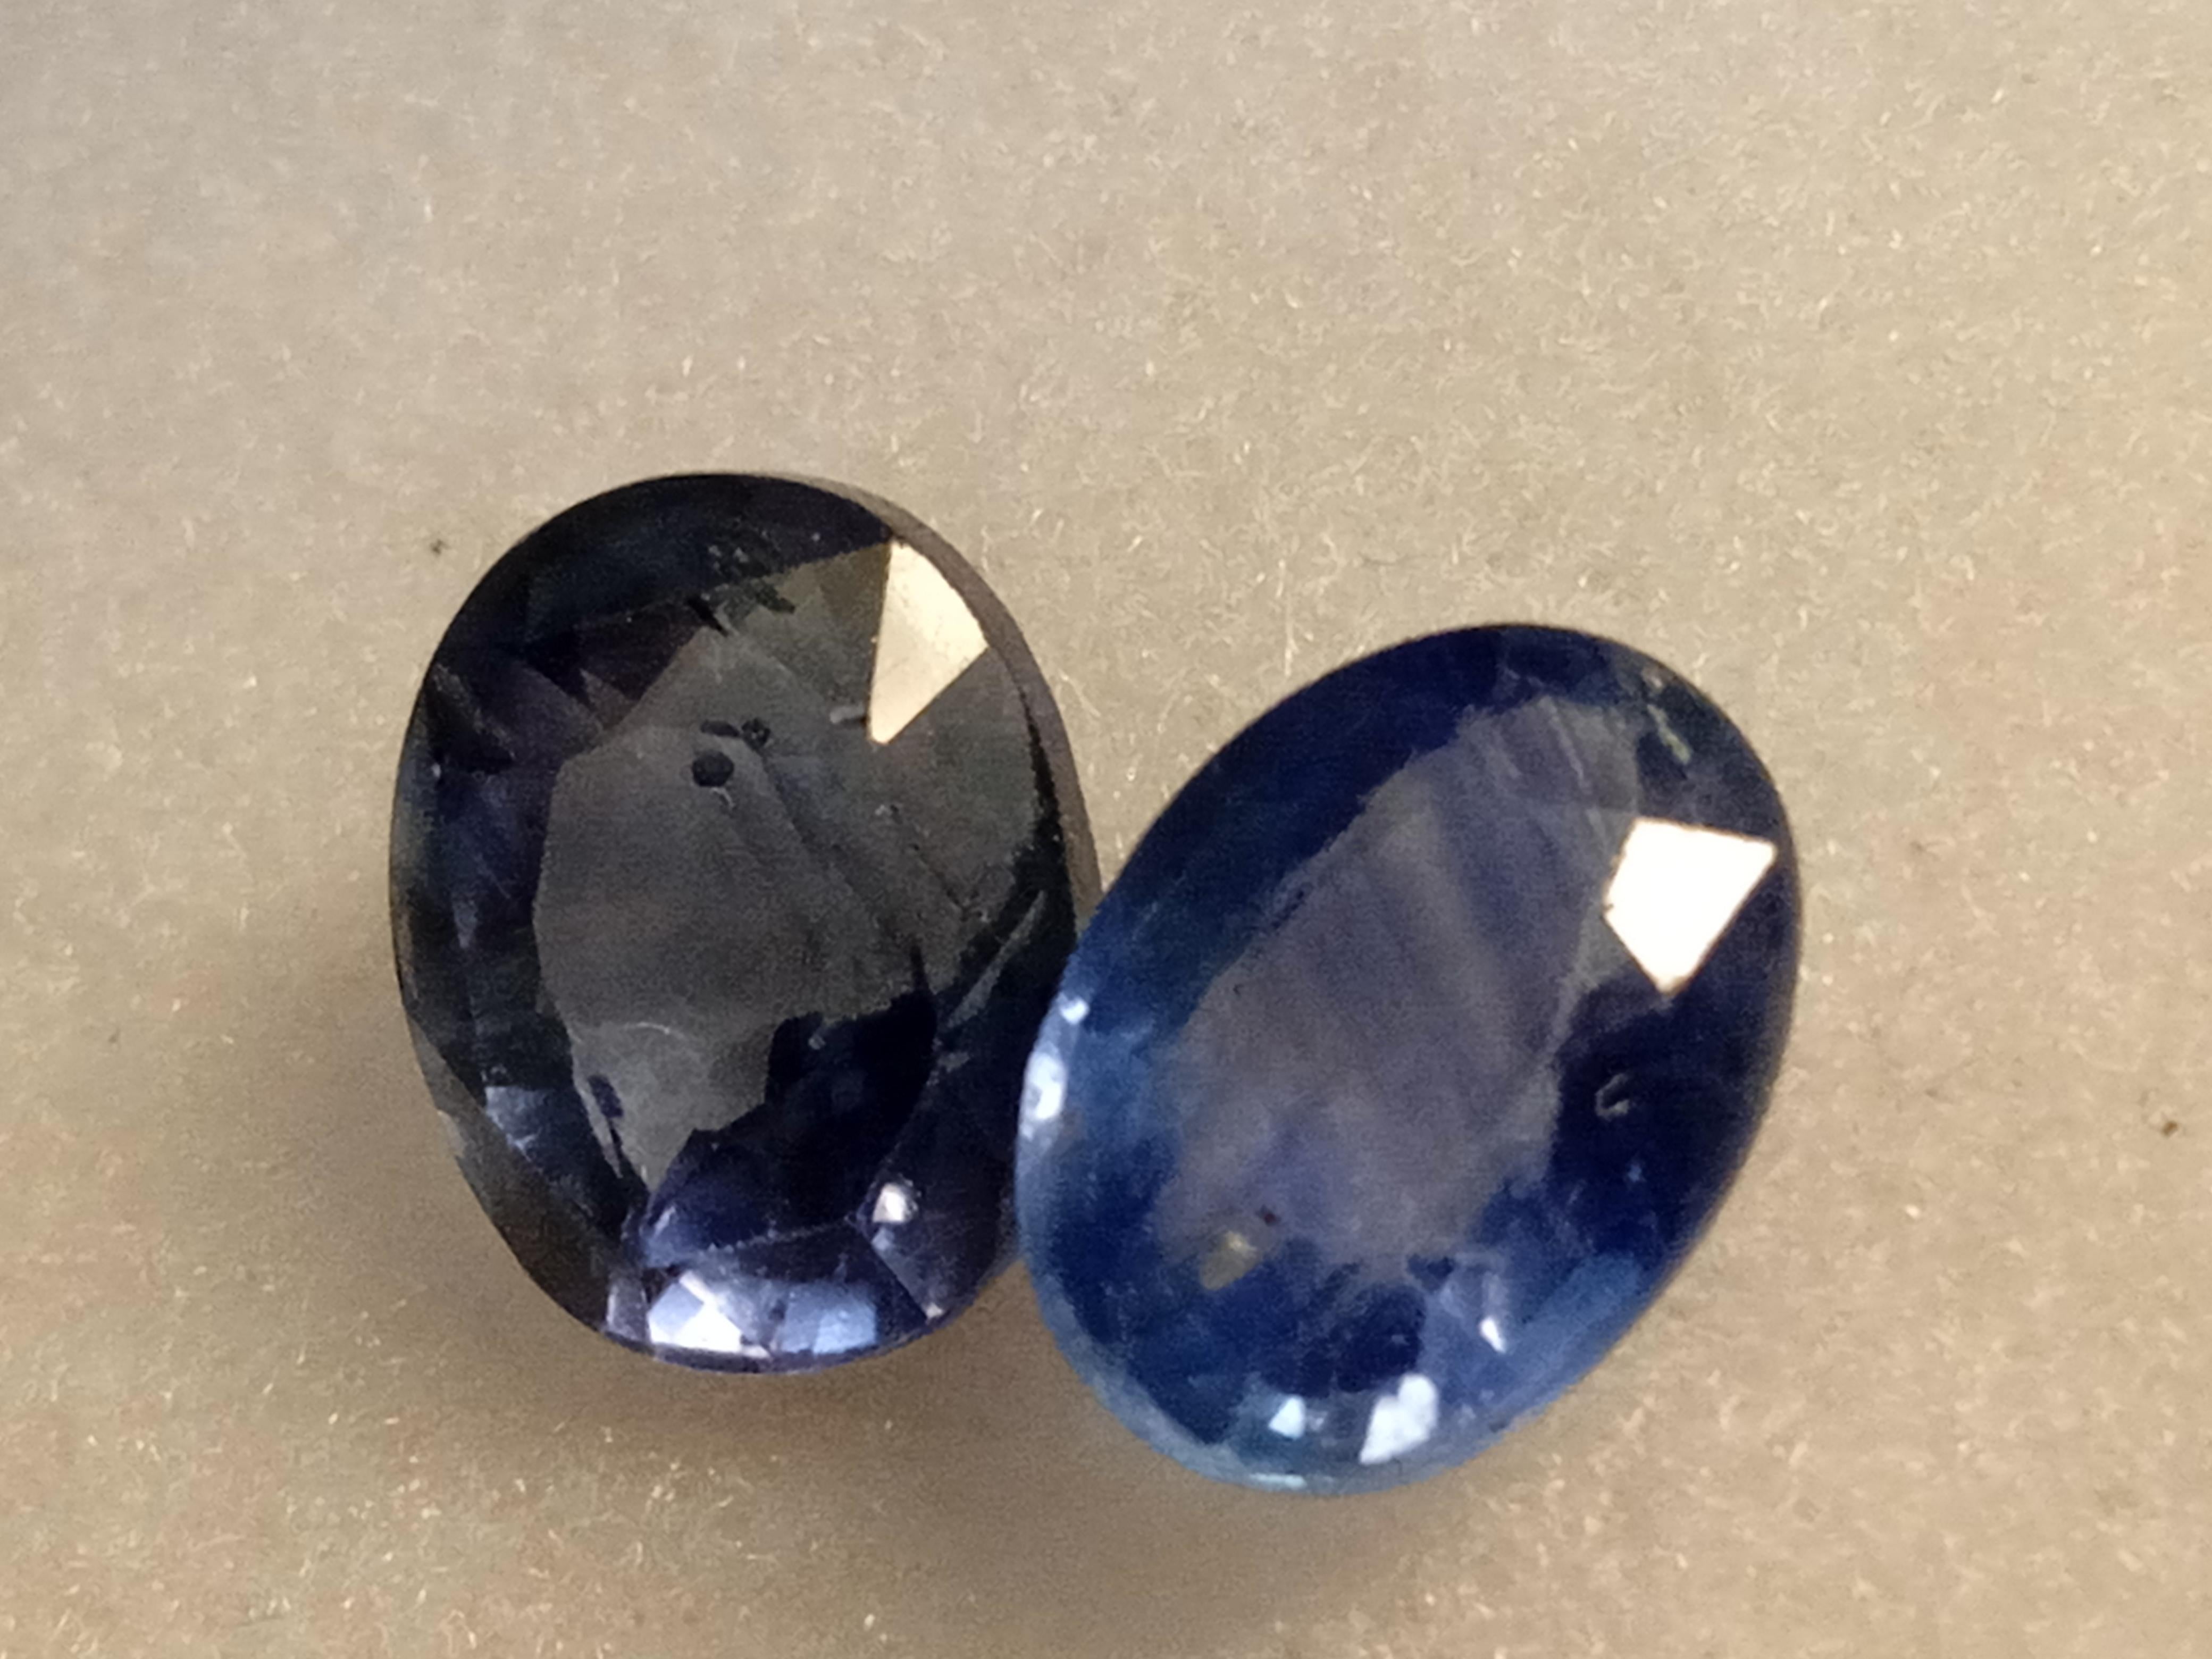 Erweitern Sie Ihre Schmucksammlung mit diesem exquisiten Stück eines natürlichen blauen Saphirs. Der Edelstein wurde perfekt in einer ovalen Form geschliffen und zeichnet sich durch einen hervorragenden Schliff und eine augenreine Klarheit aus. Er